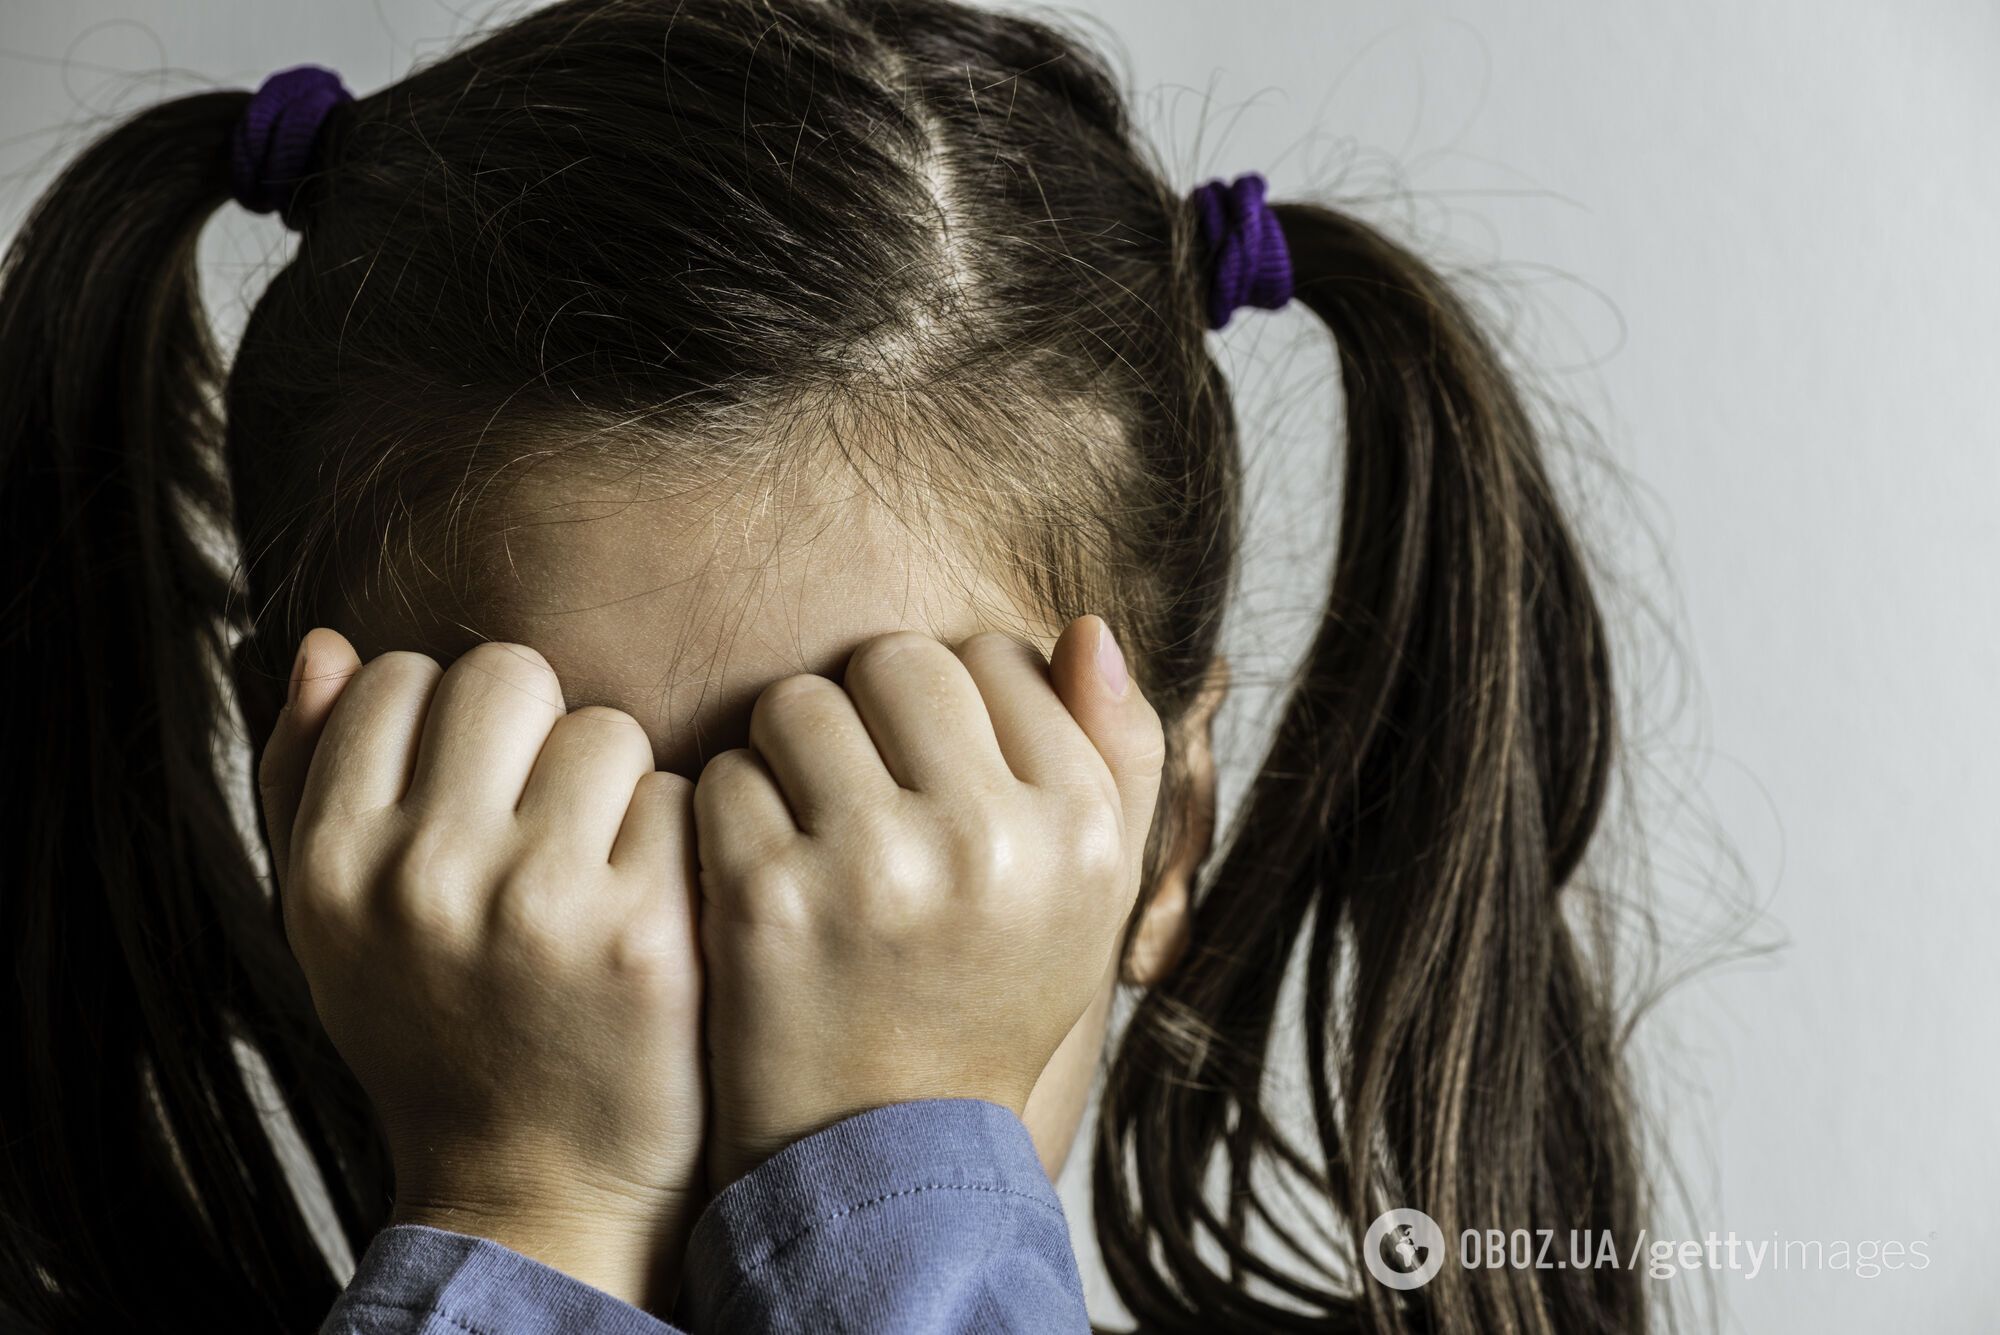 На Днепропетровщине из-за побоев скончалась 4-летняя девочка. Иллюстрация